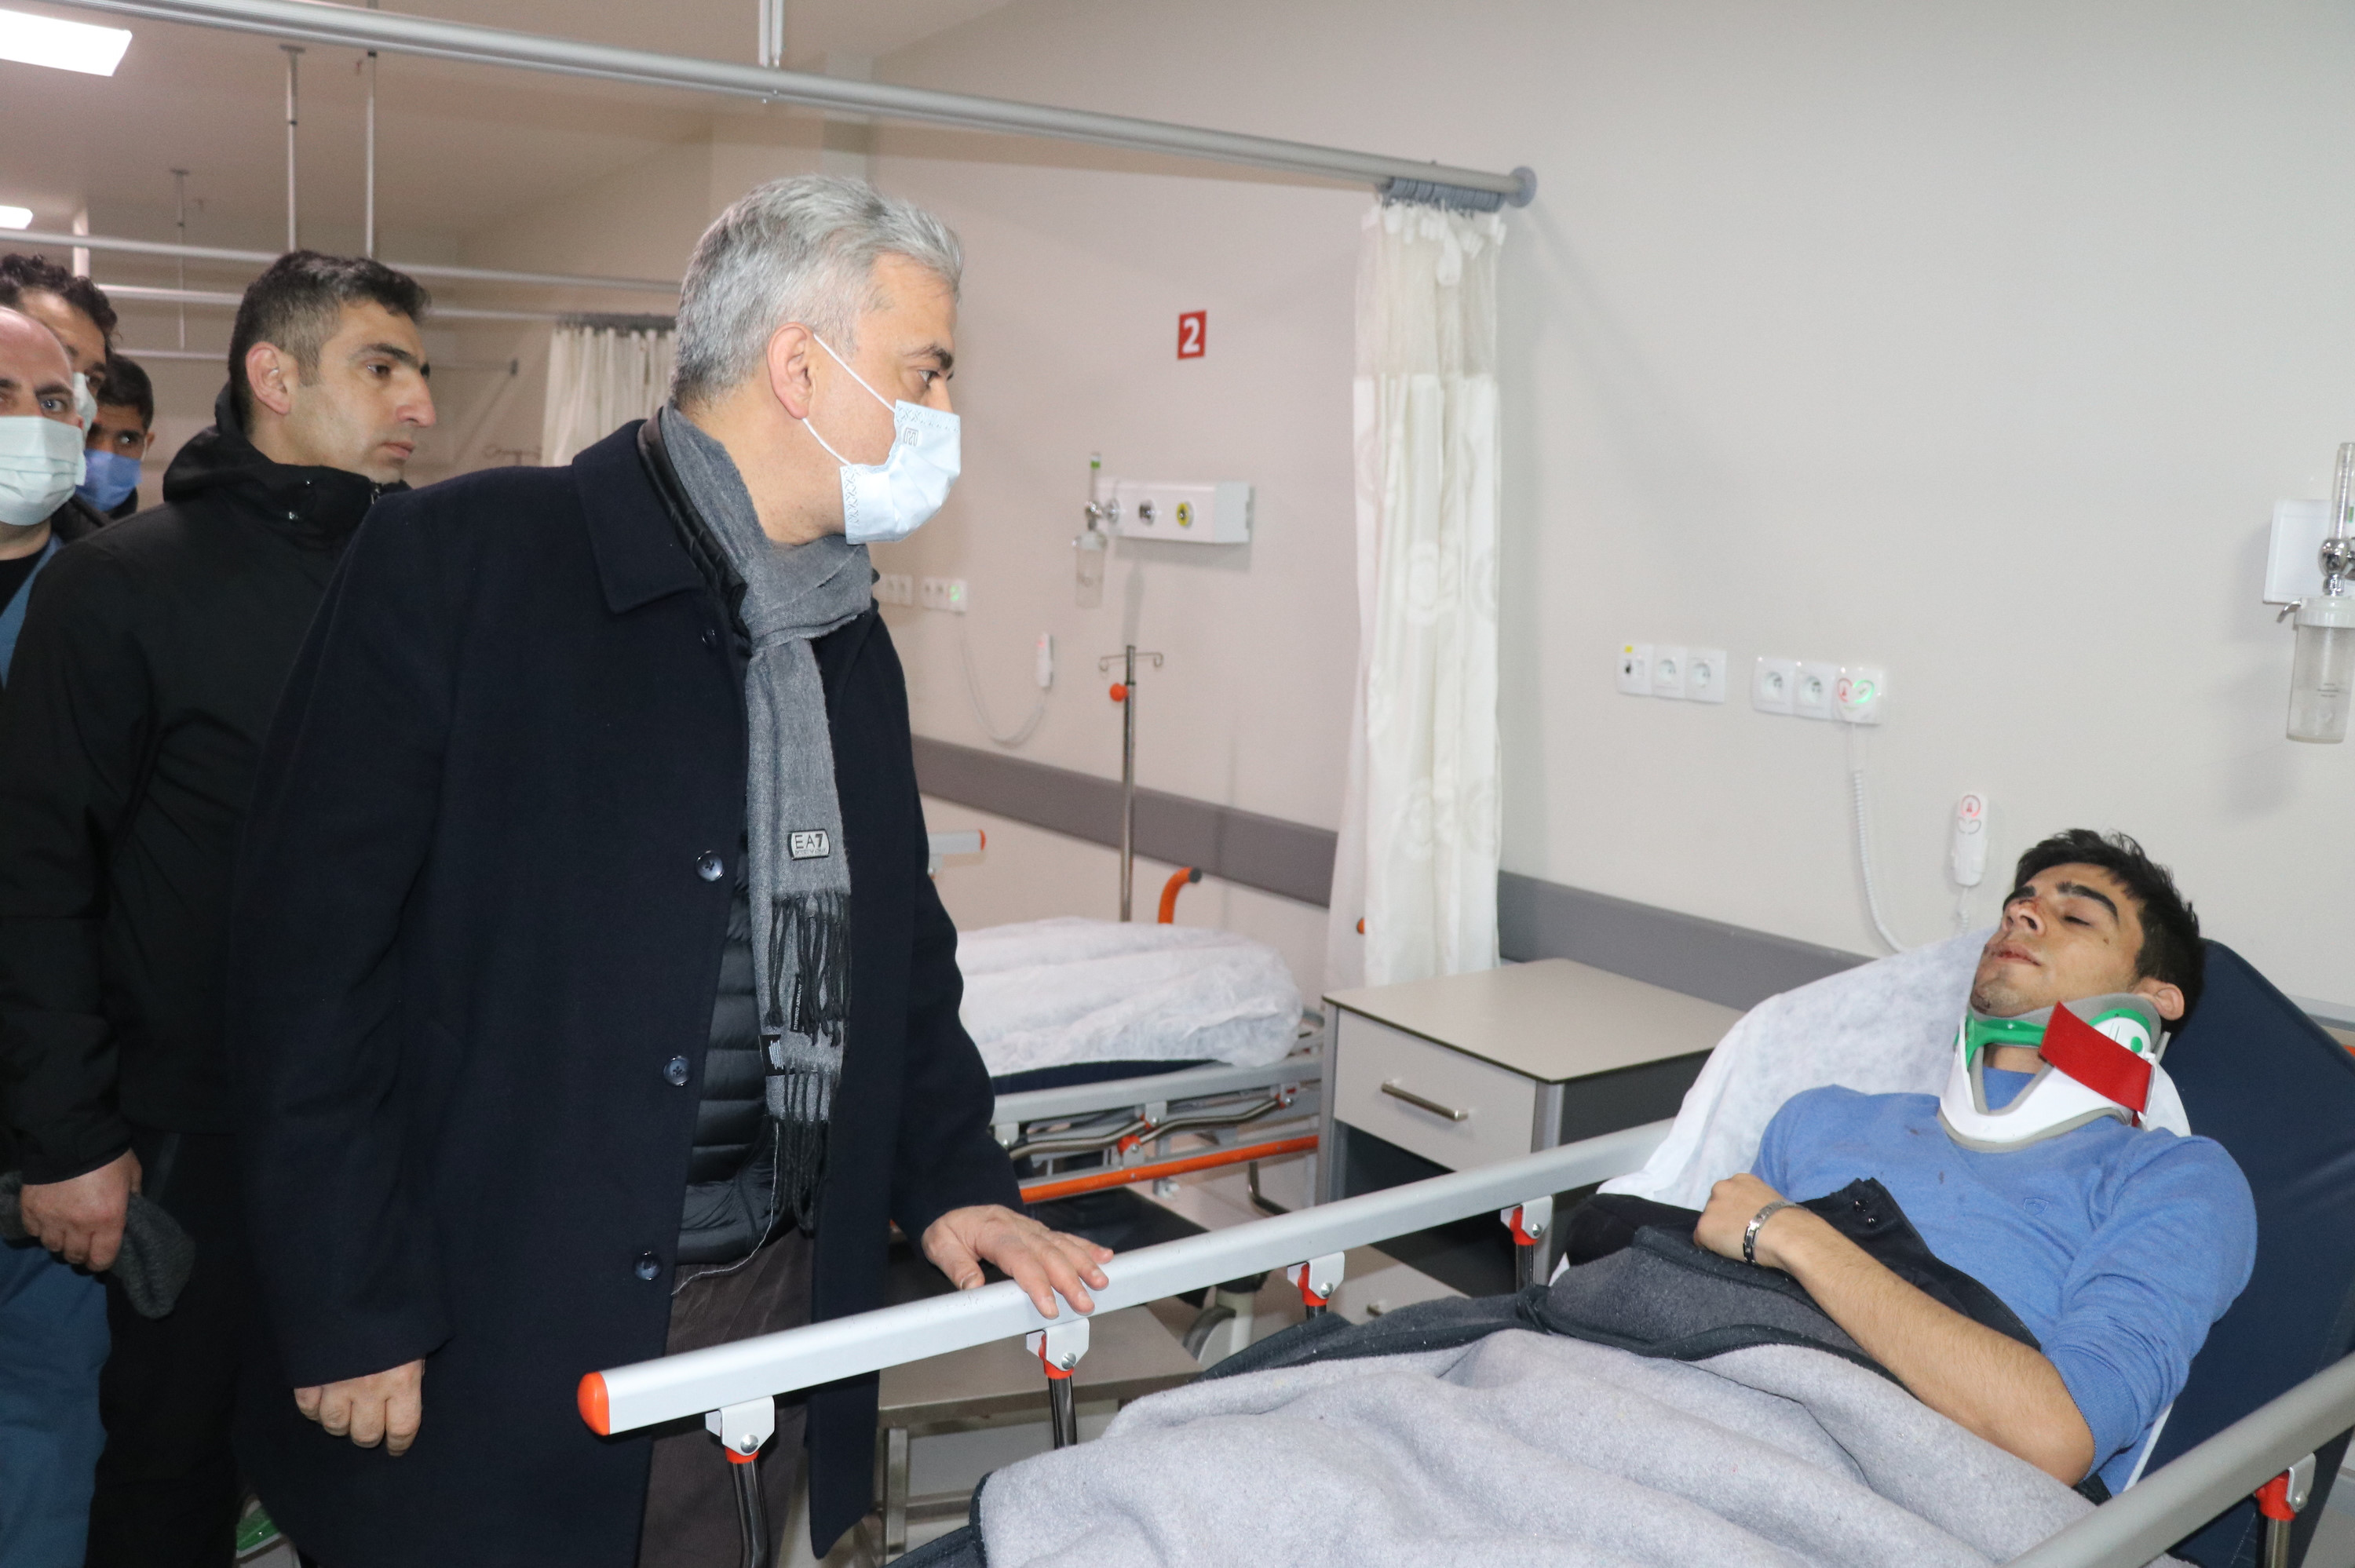  Erzincan Valisi Mehmet Makas Erzincan Binali Yıldırım Üniversitesi Mengücek Gazi Eğitim ve Araştırma Hastanesi'nde yaralıları ziyaret etti.